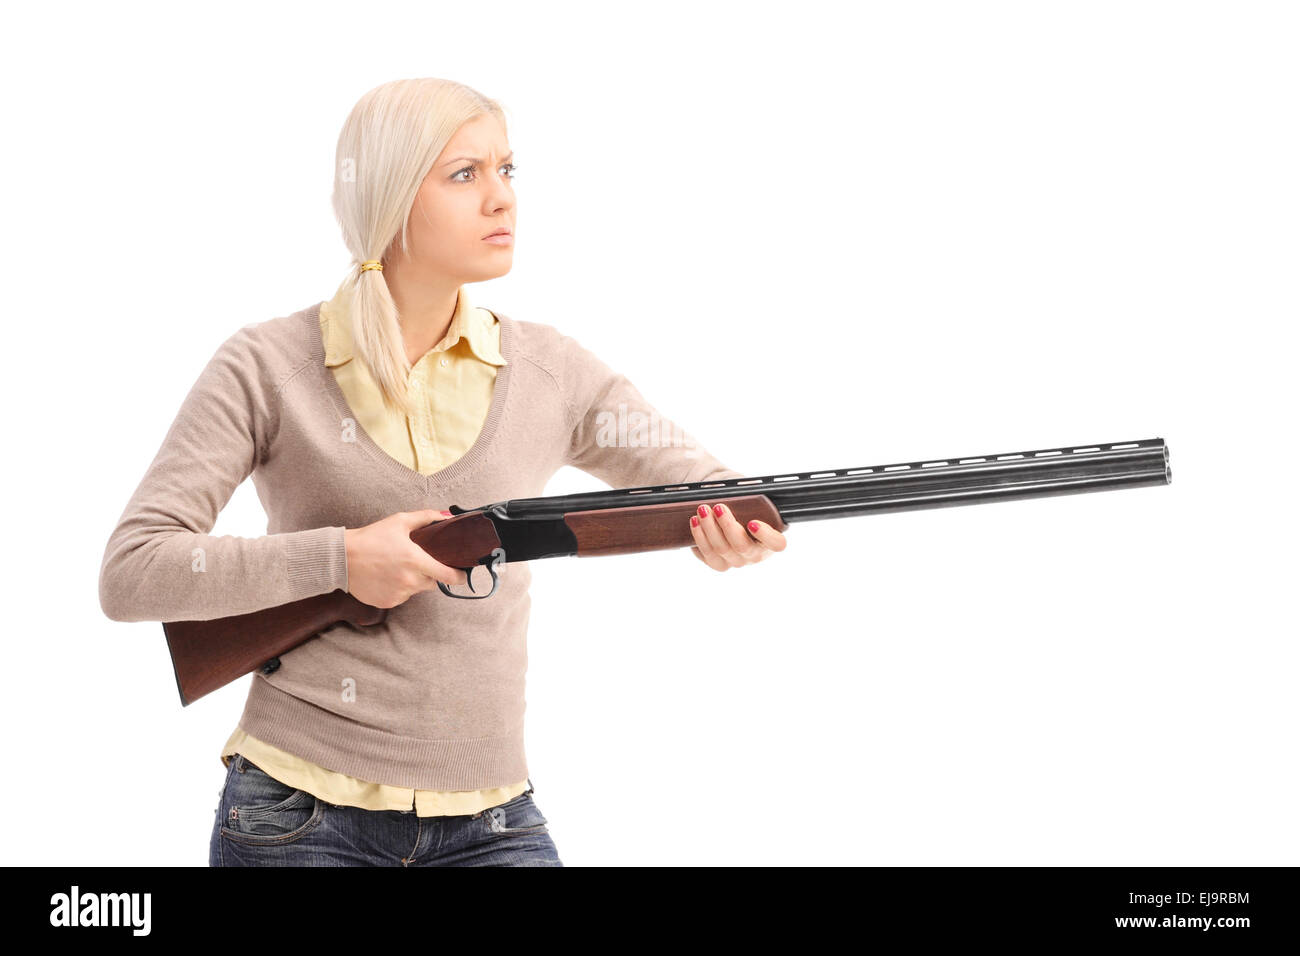 Furious jeune blond woman holding un fusil prêt à tirer isolé sur fond blanc Banque D'Images